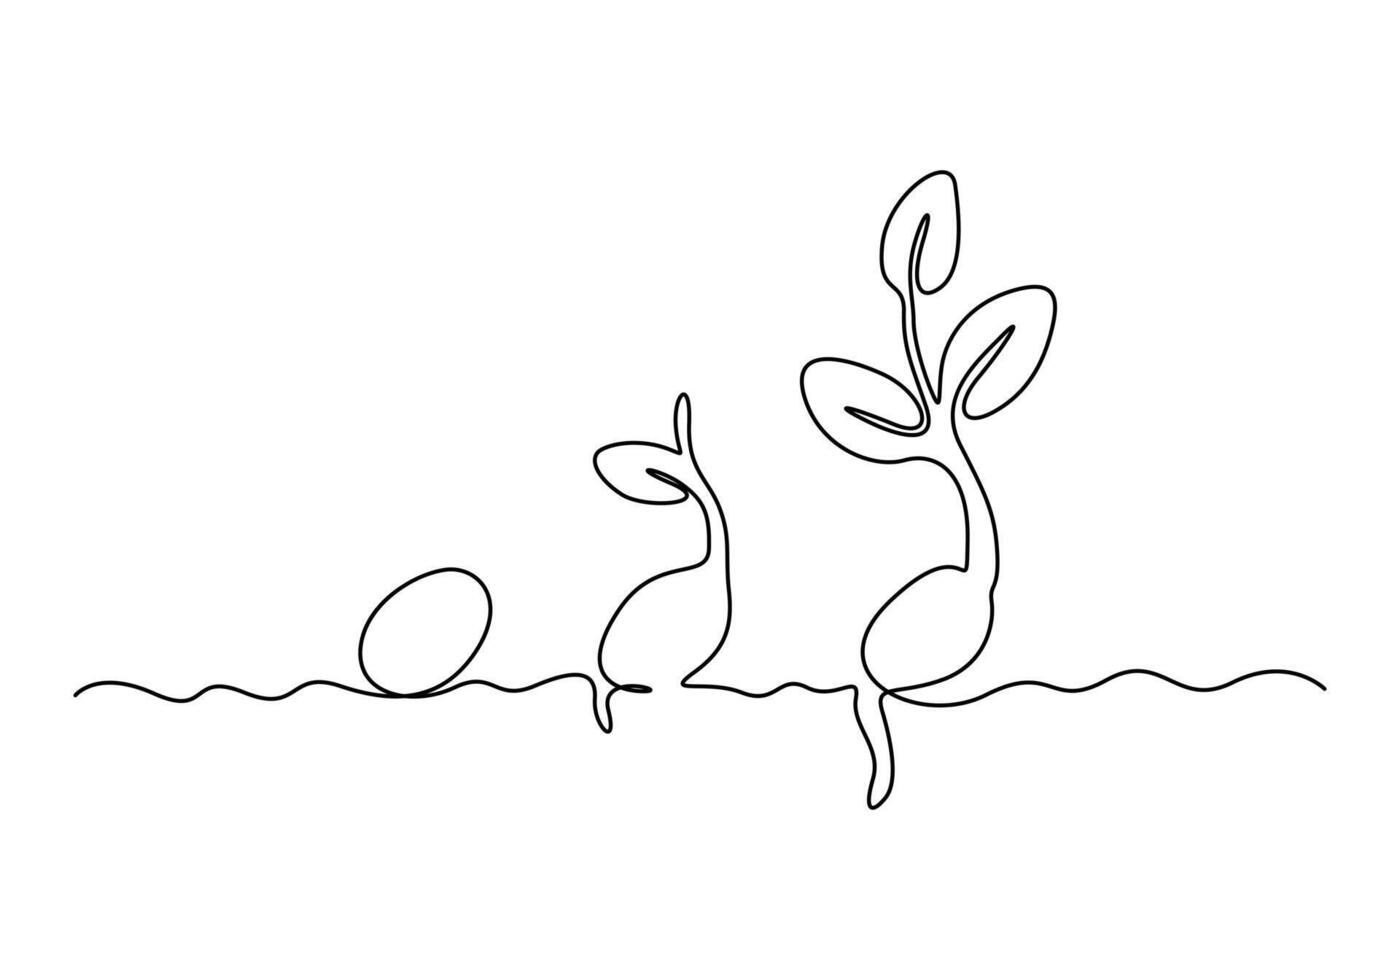 kontinuerlig ett linje teckning av växt tillväxt bearbetning översikt vektor illustration